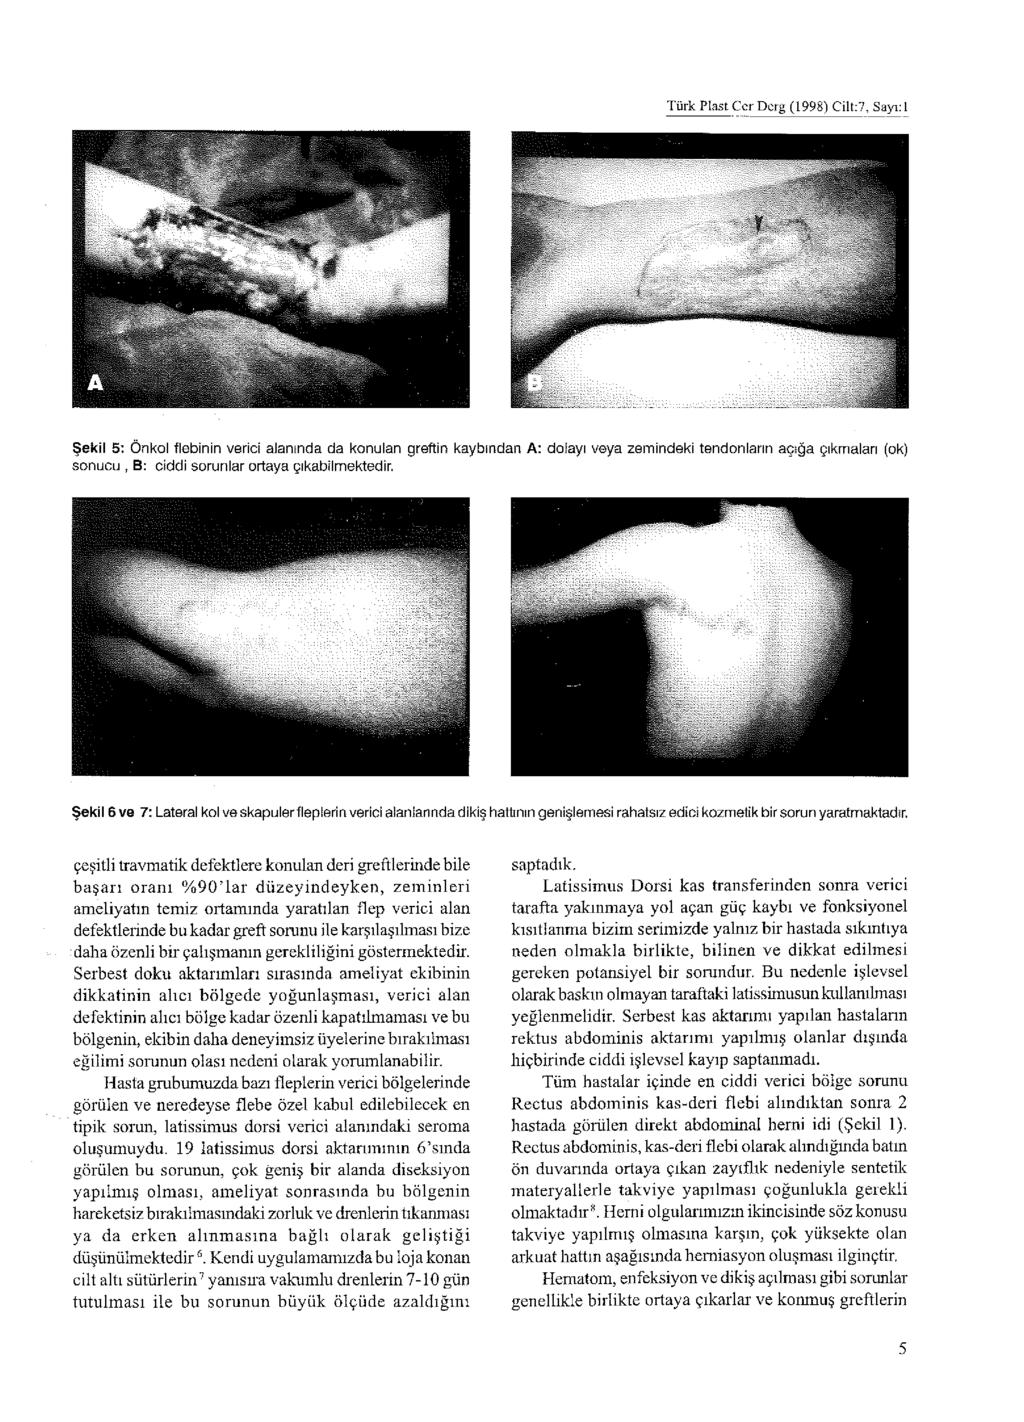 Türk Plast Cer Derg (1998) Cilt:7, Sayı: 1 Şekil 5; Önkol flebinin verici alarmda da konulan greftin kaybından A: dolayı veya zemindeki tendonların açığa çıkmaları (ok) sonucu, B: ciddi sorunlar